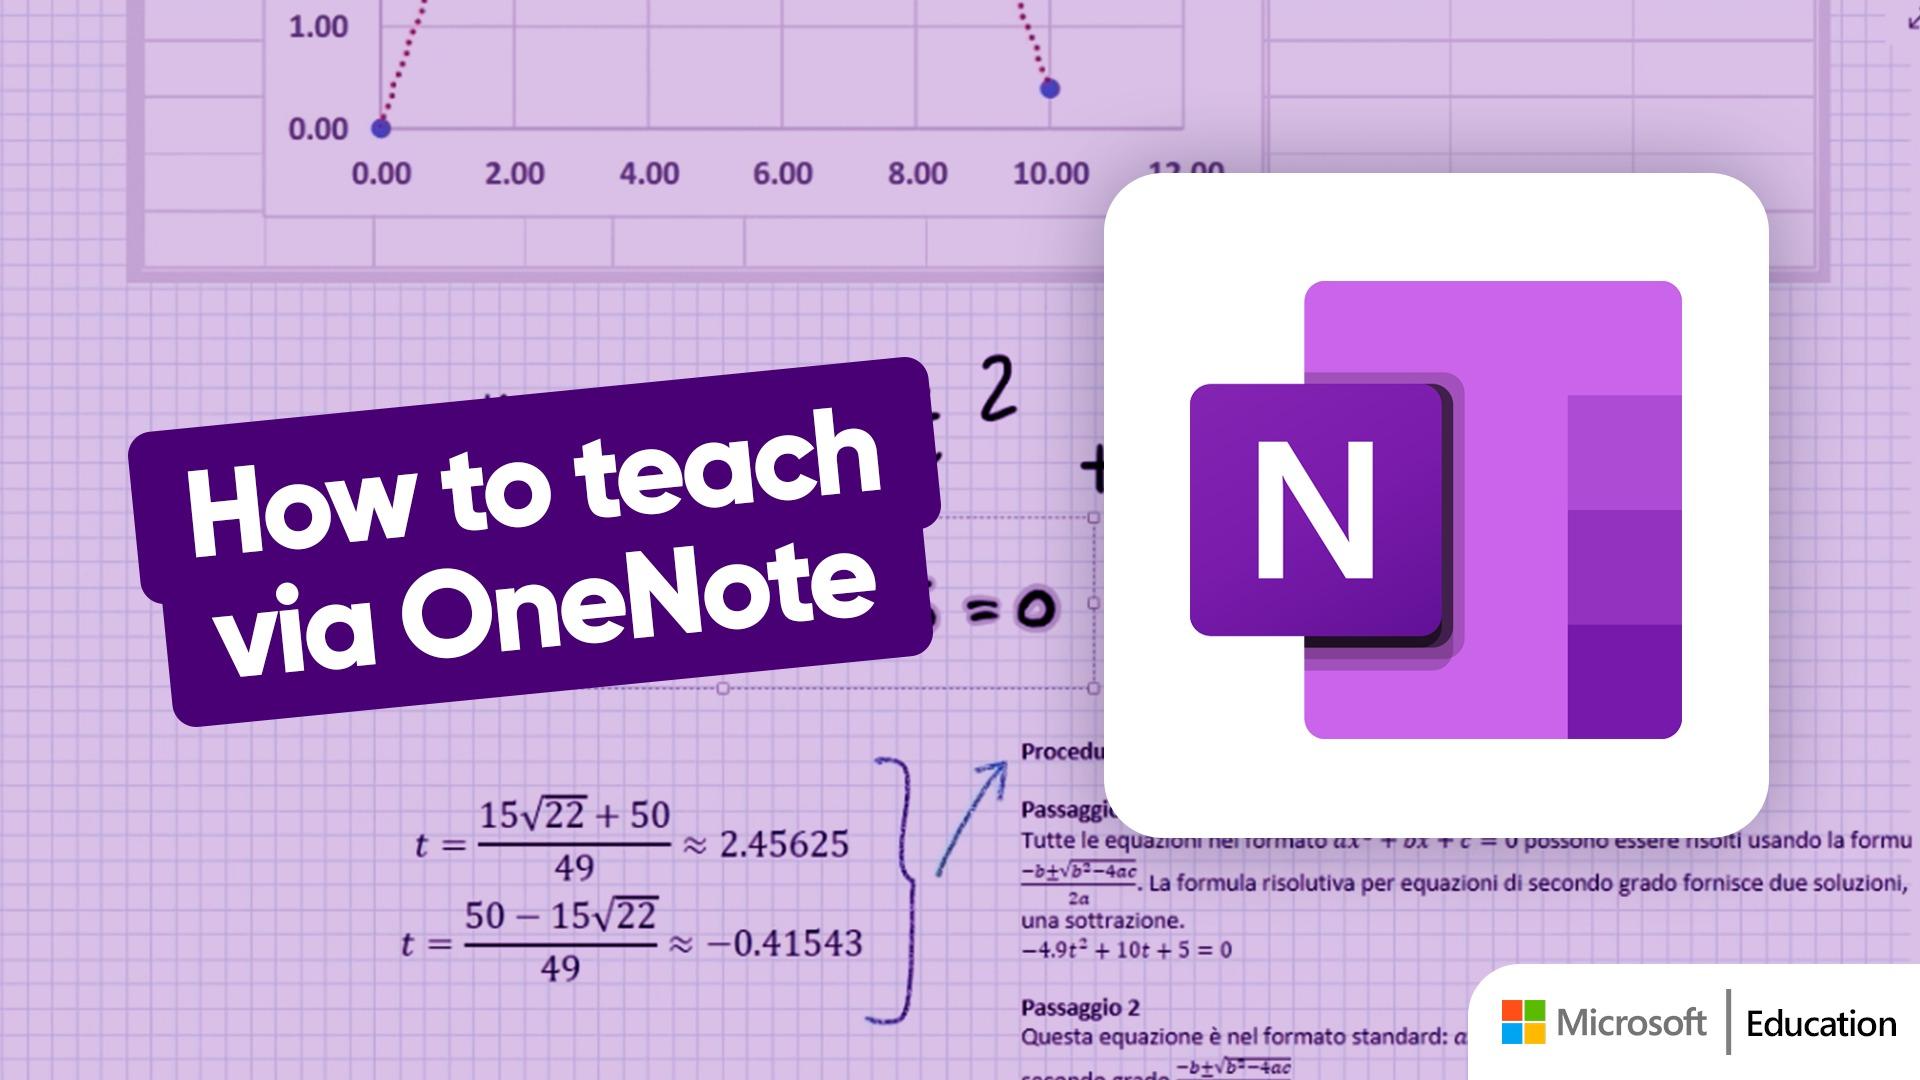 How to teach via OneNote